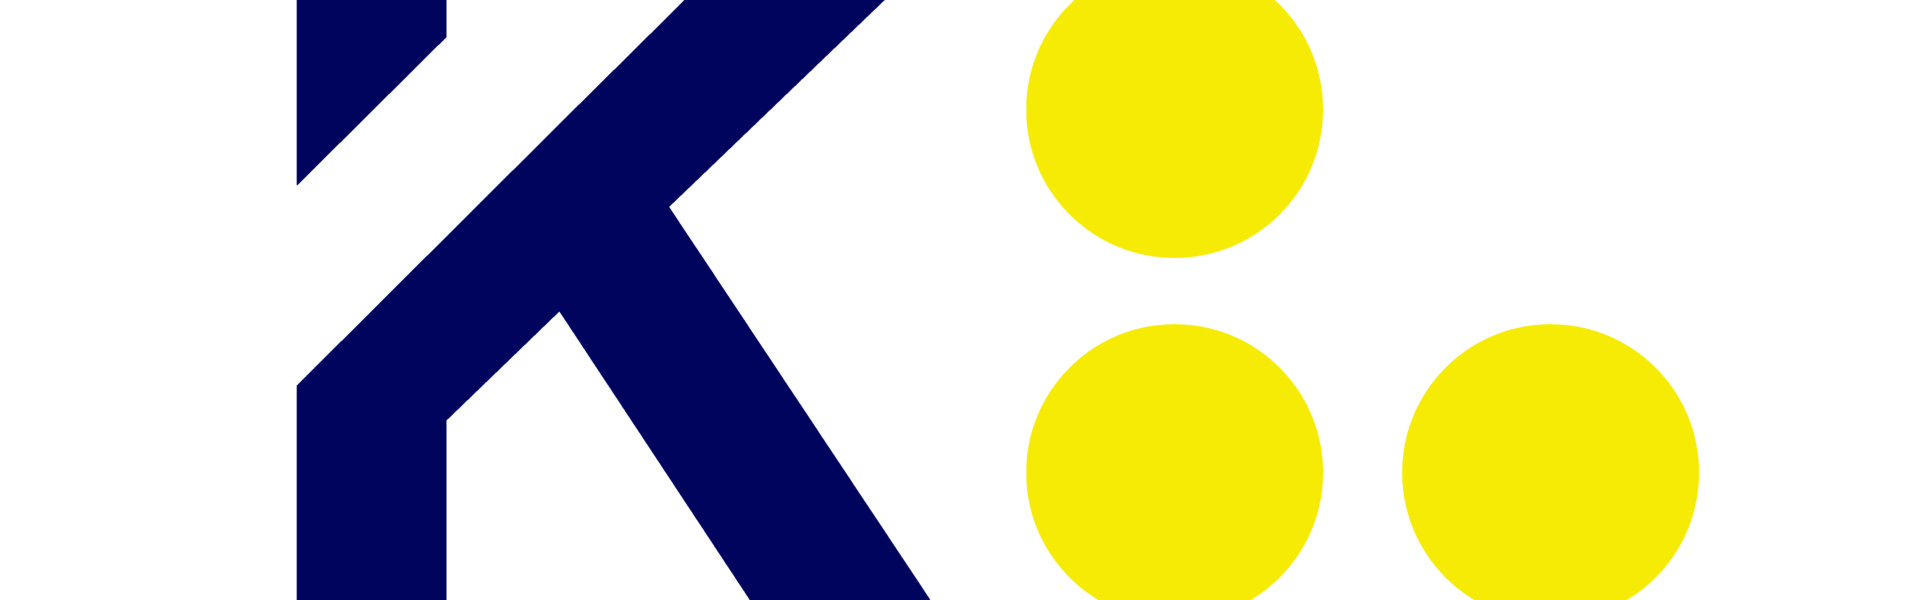 Das Logo der Gemeinde Kelmis